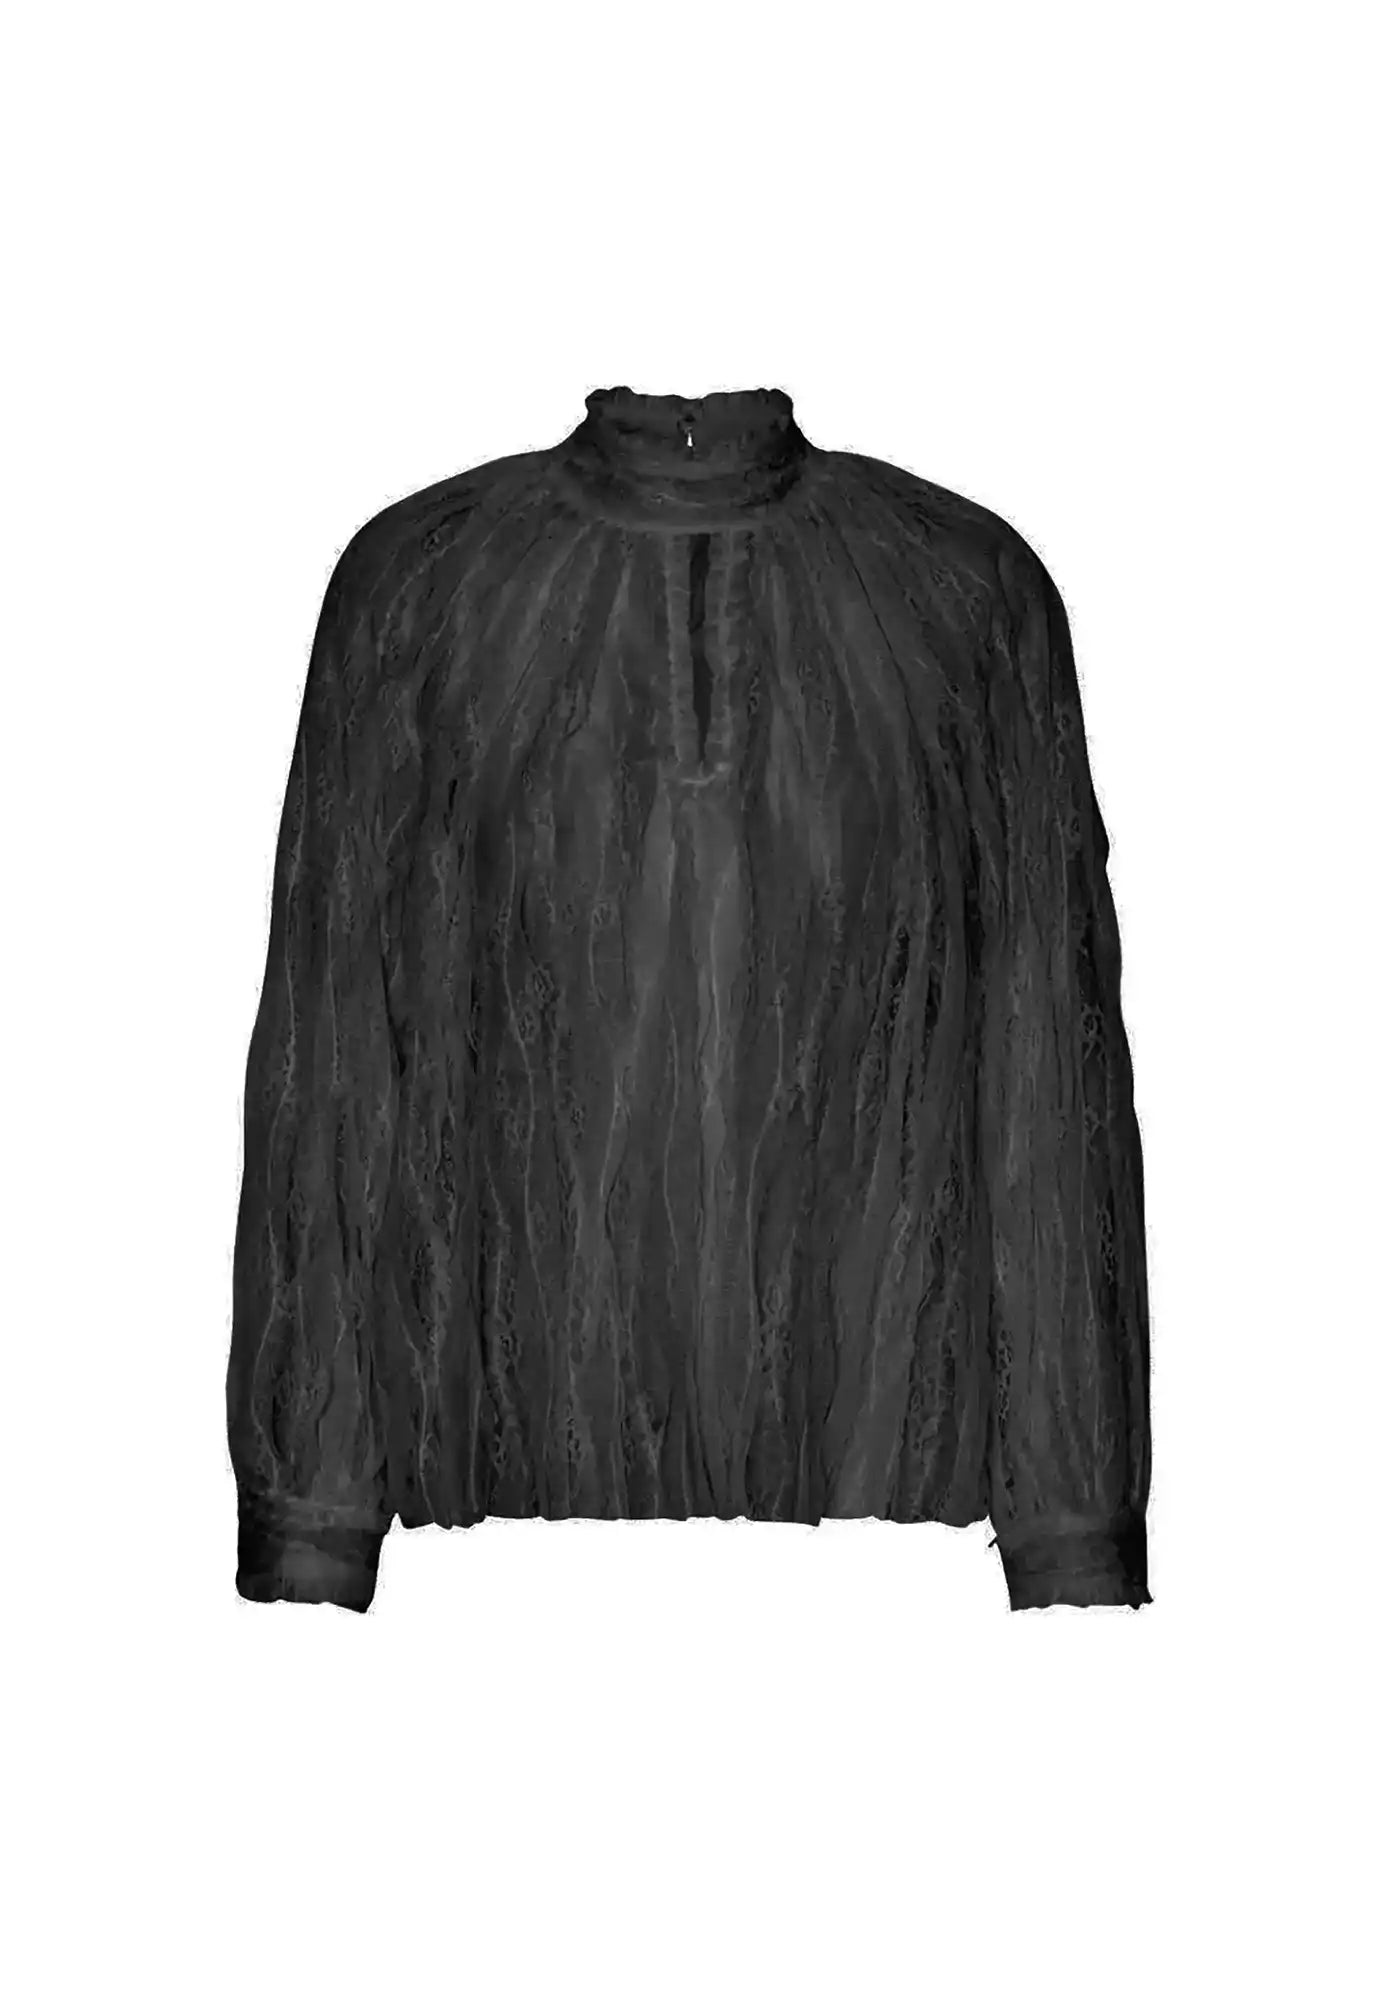 project aj117 - fina shirt - black